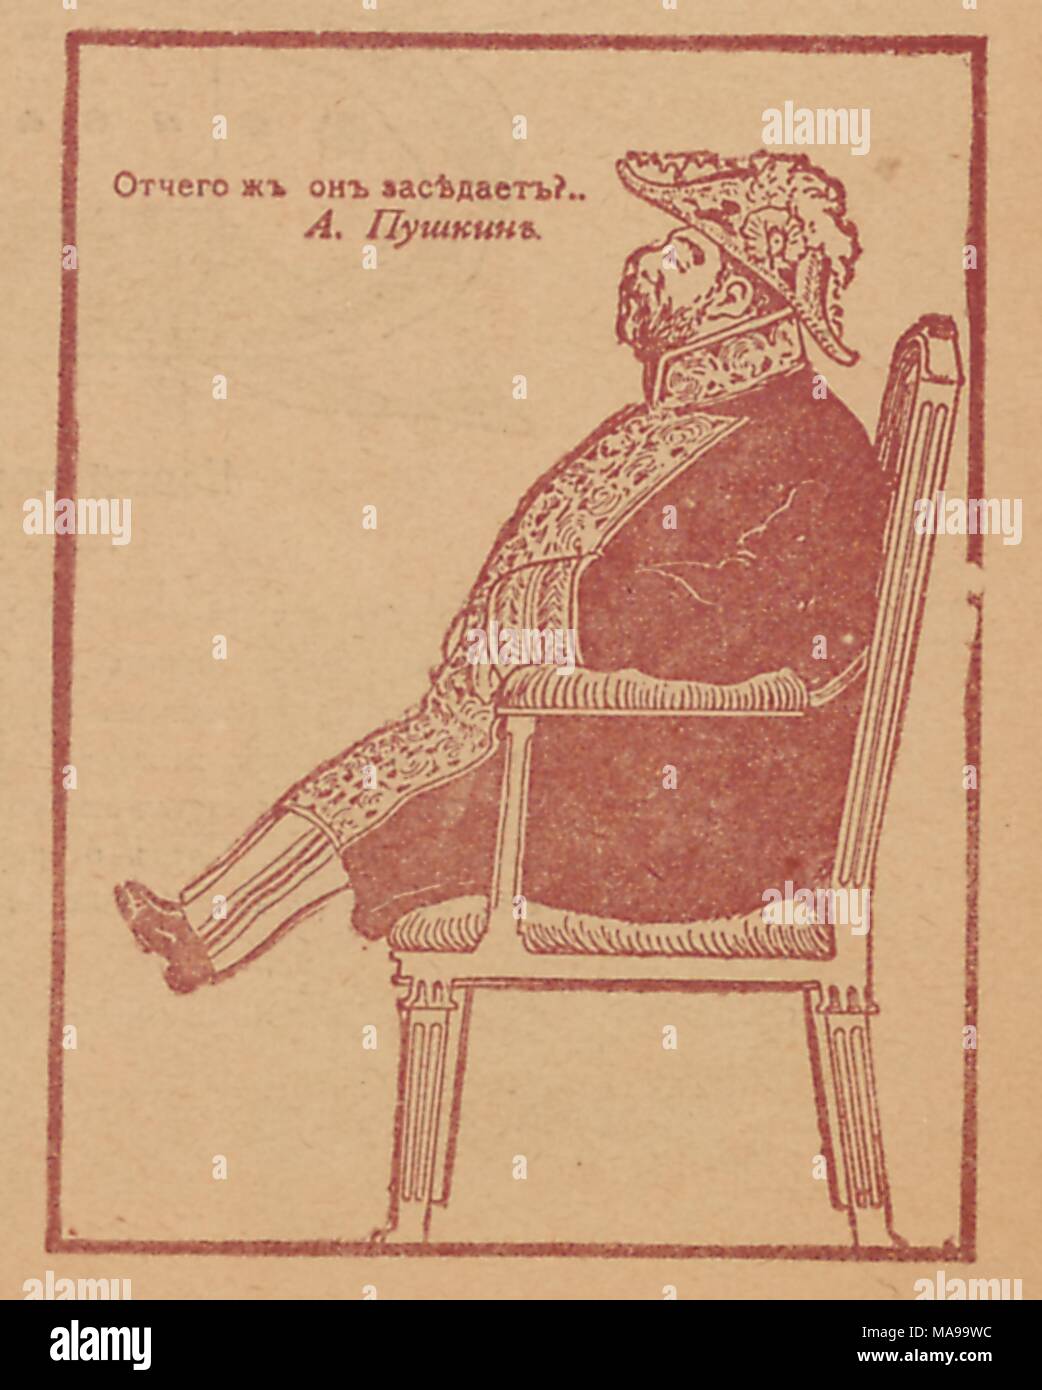 Karikatur aus der Russischen satirische Zeitschrift Signaly (Signale), ein Mann in einem aufwendigen Militär Kostüm sitzt auf einem Stuhl, mit Text lesen "Warum ist er sitzen?, 1905.', eine Linie von einem epigramm von Alexander Puschkin geschrieben. () Stockfoto